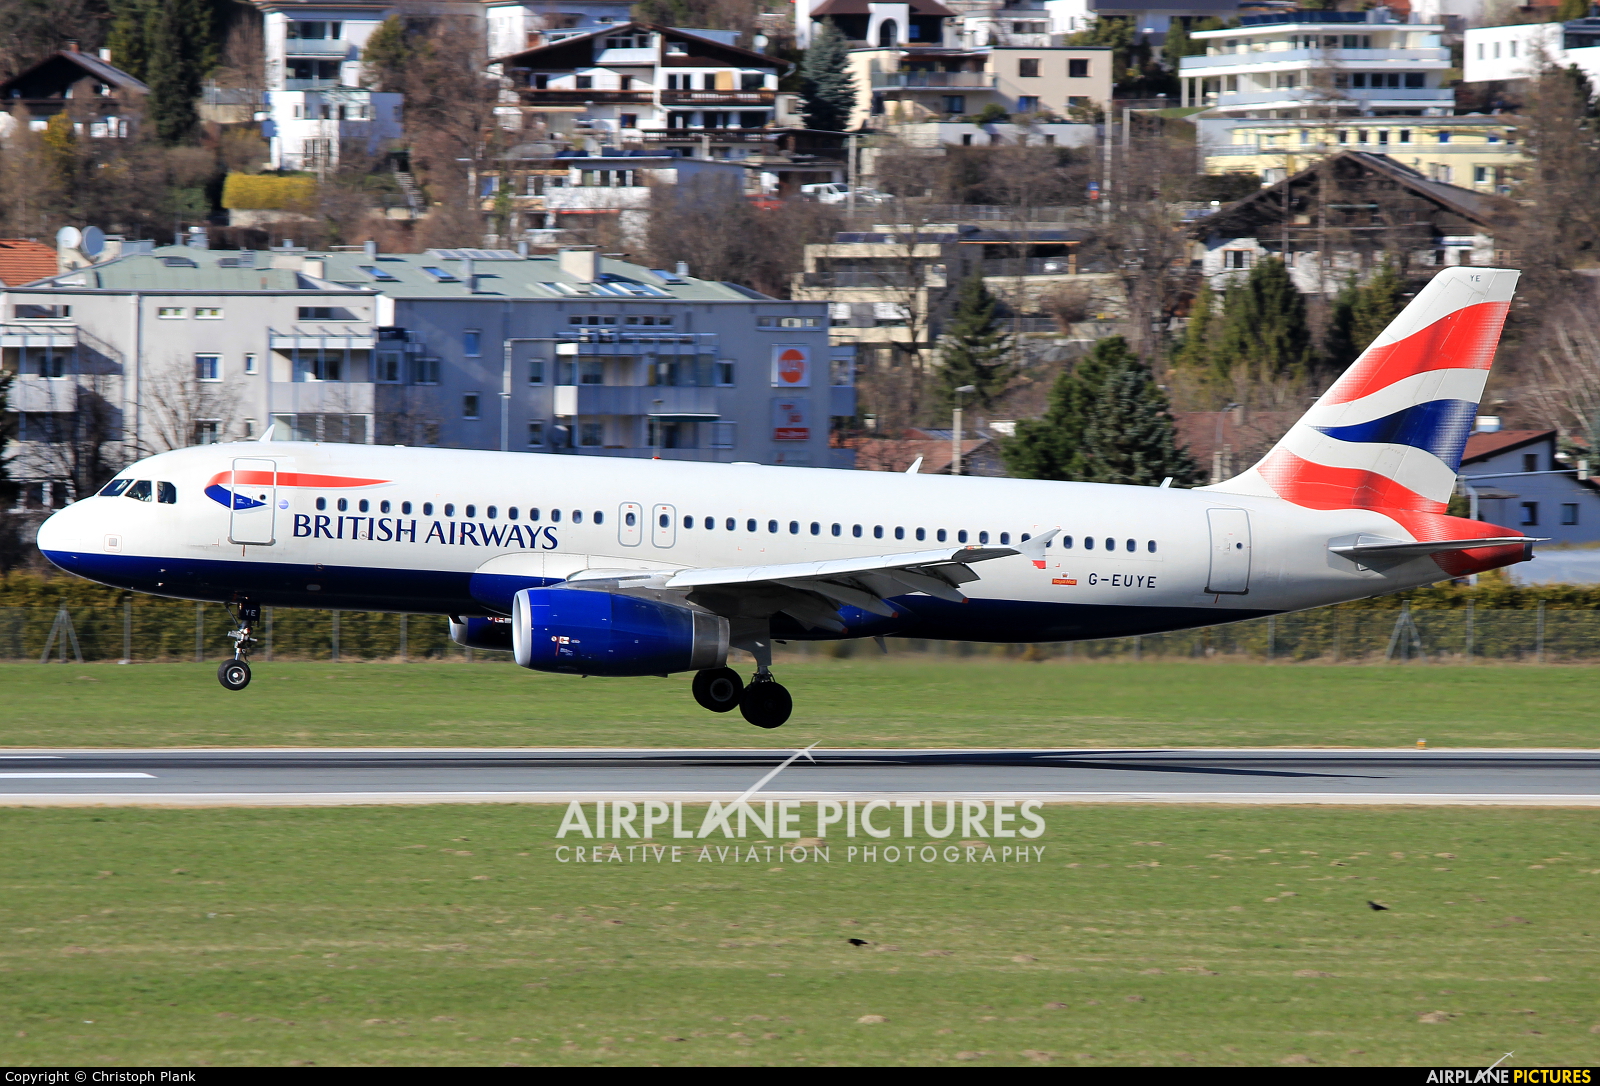 British Airways G-EUYE aircraft at Innsbruck